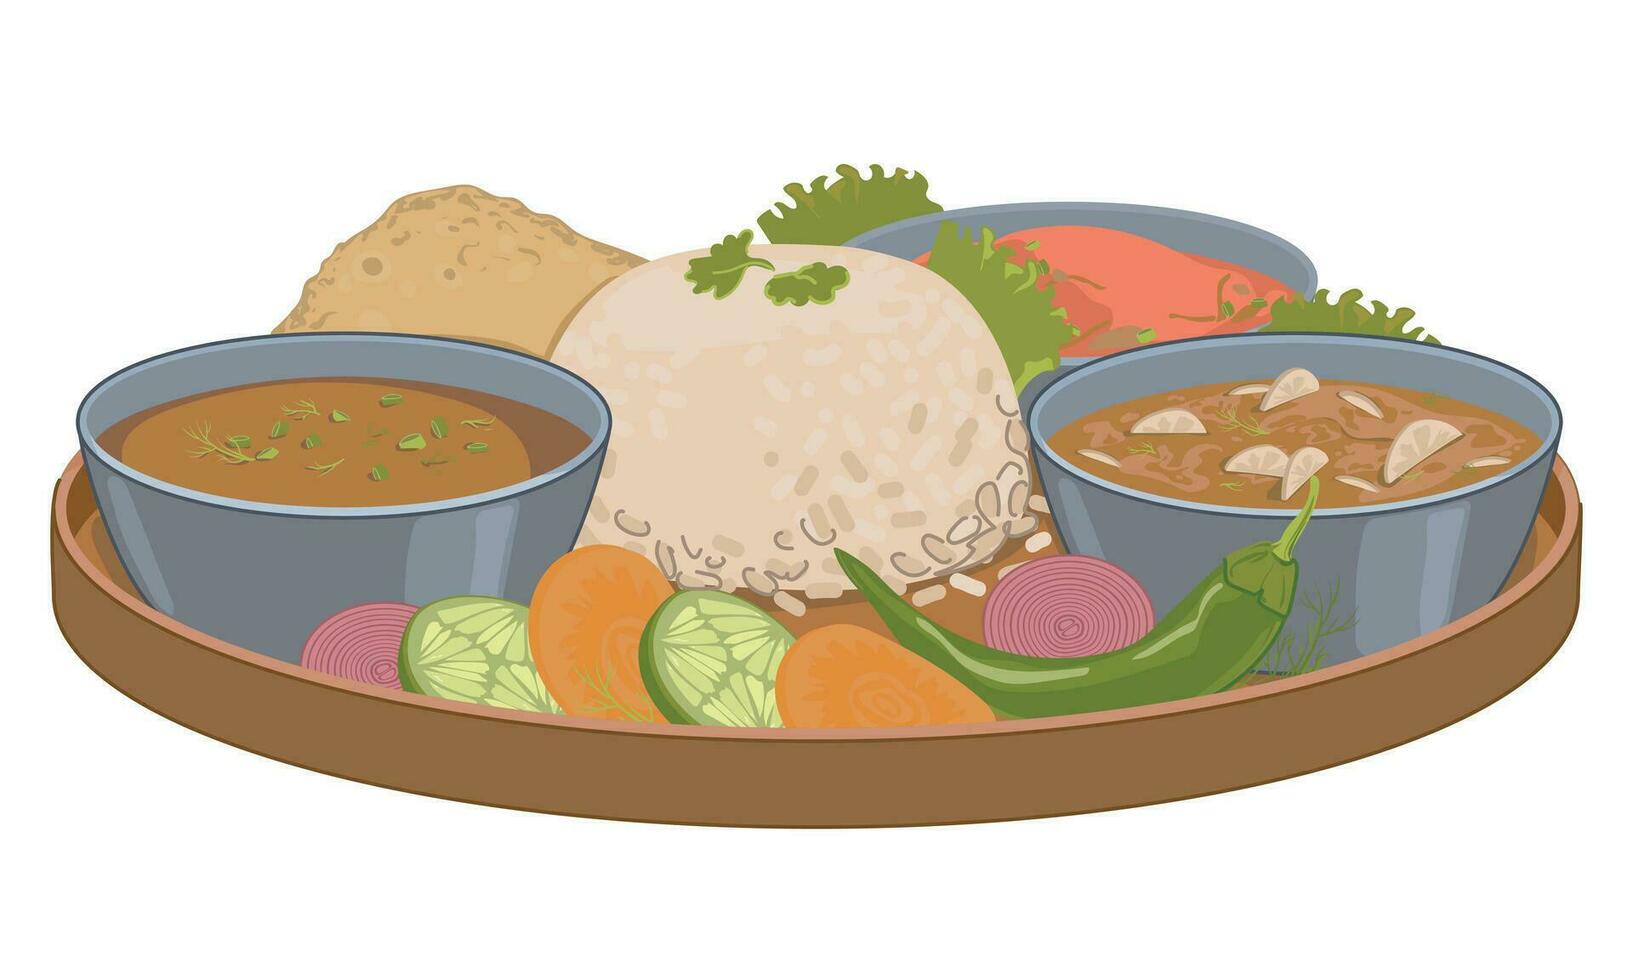 nepalese thali reeks dal bhat, vegetarisch gerecht. vector, vlak stijl. wit gekookt rijst, kerrie, plat brood, saus, yashgurt, groenten, dal, pittig kruiden. gemakkelijk voedsel voor sterkte in de bergen. vector